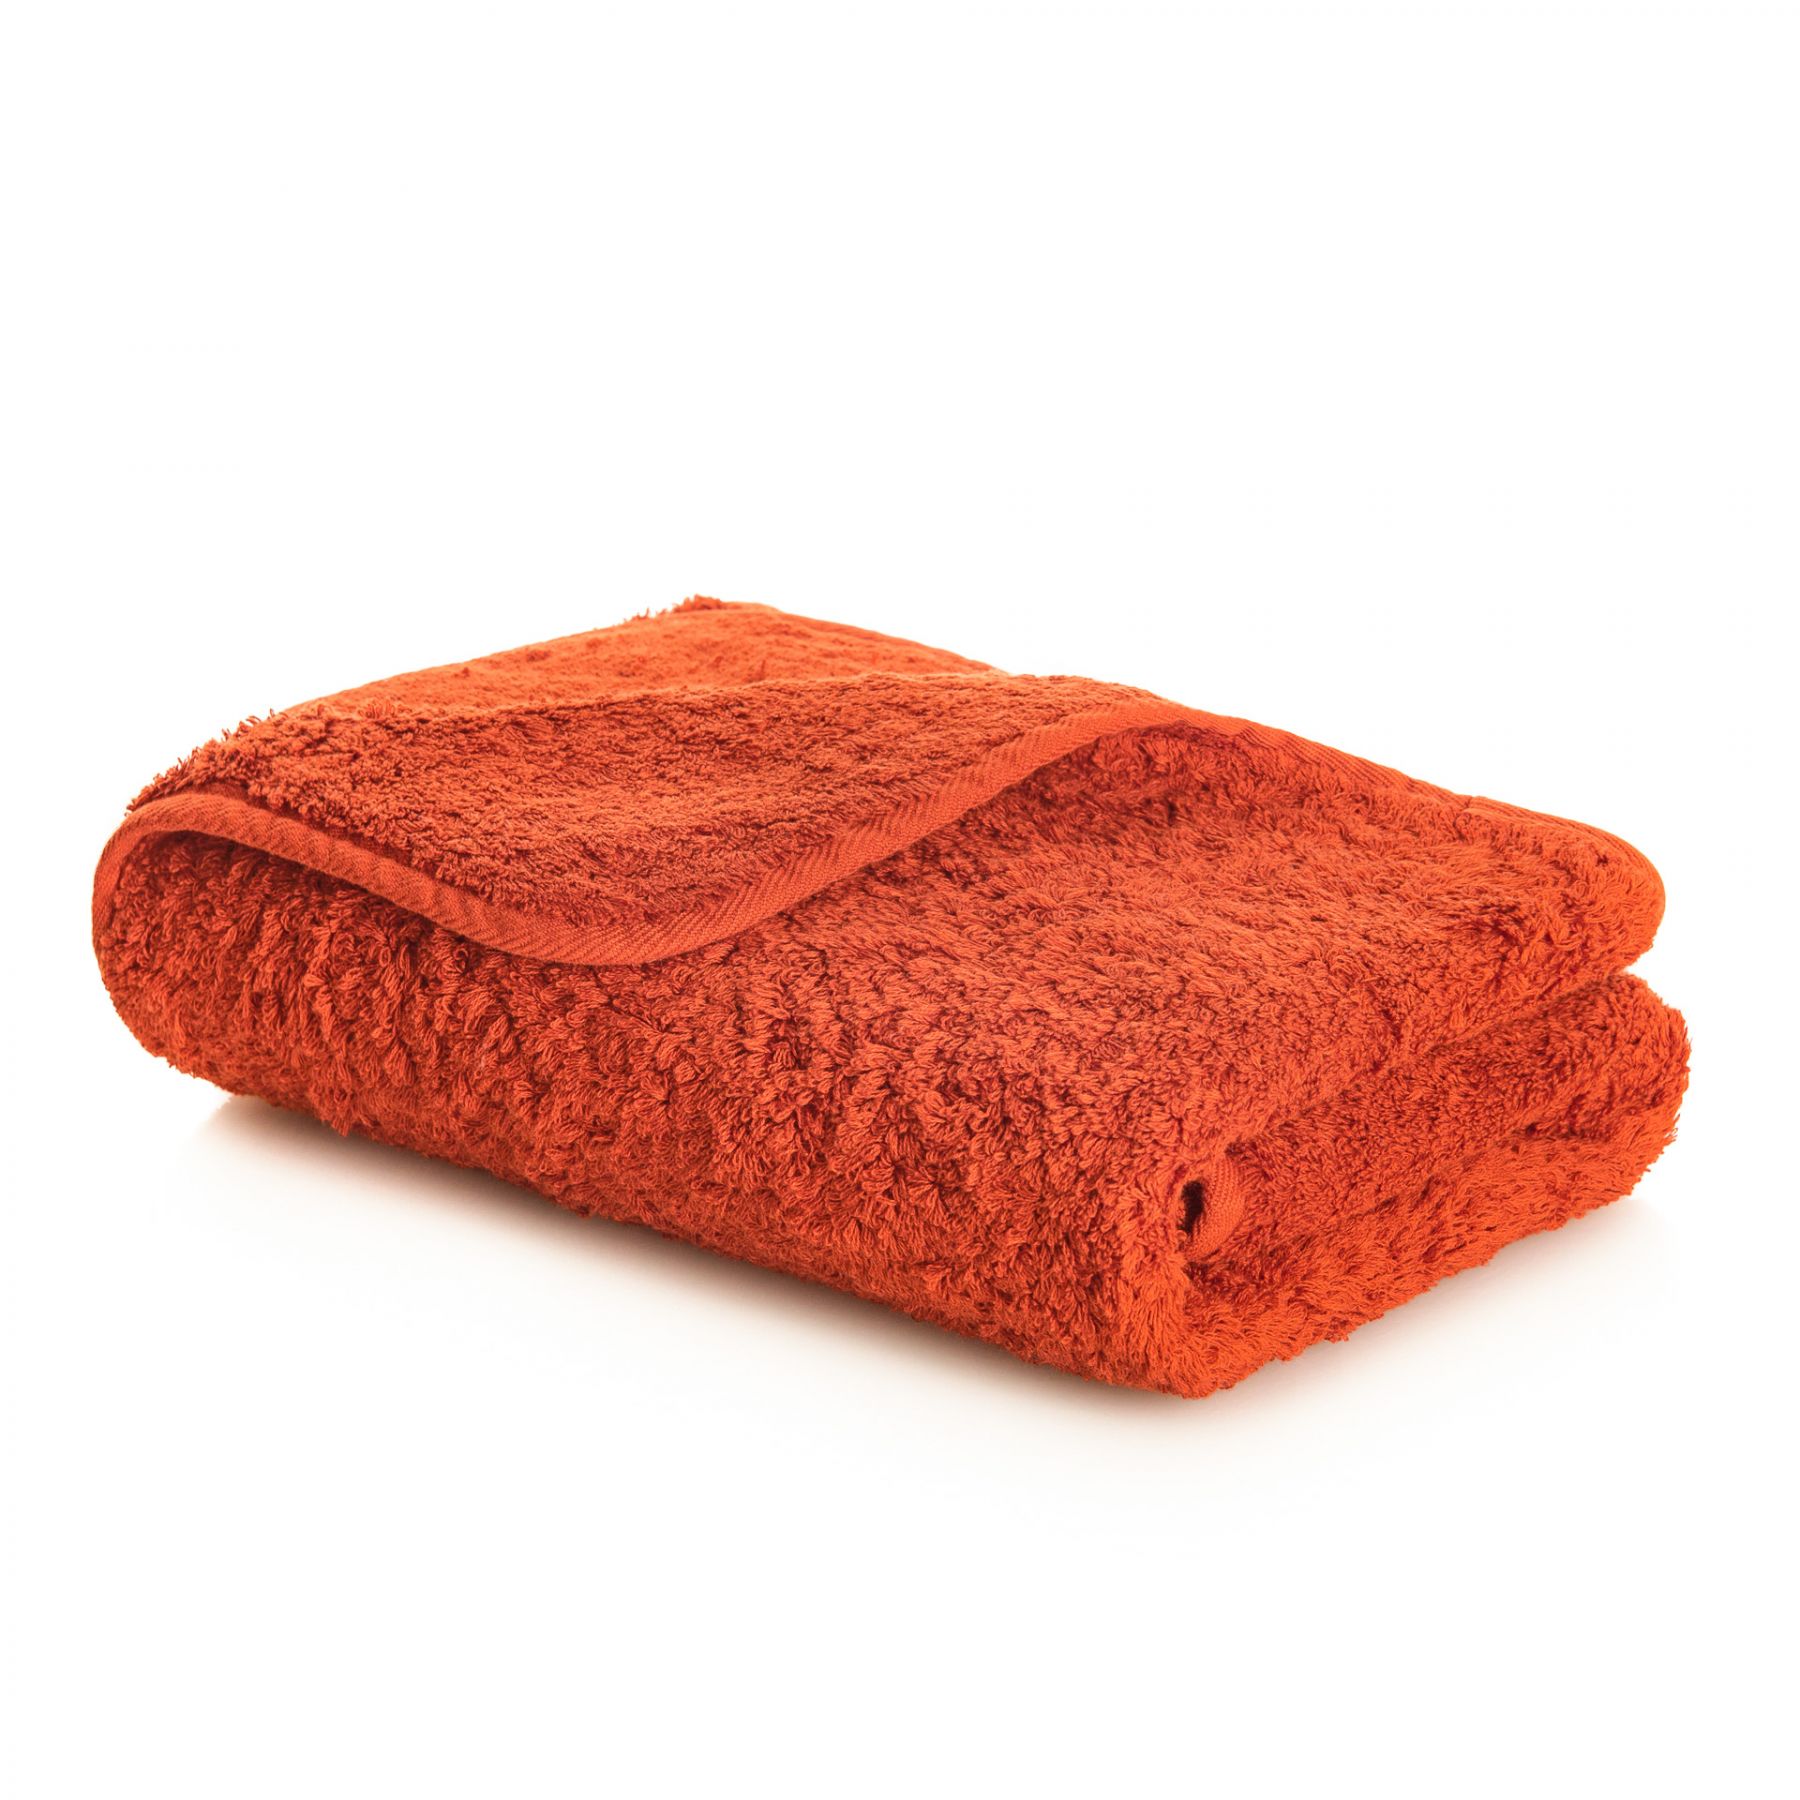 Элитное полотенце Egoist Range Spicy ☞ Размер: 50 x 100 см